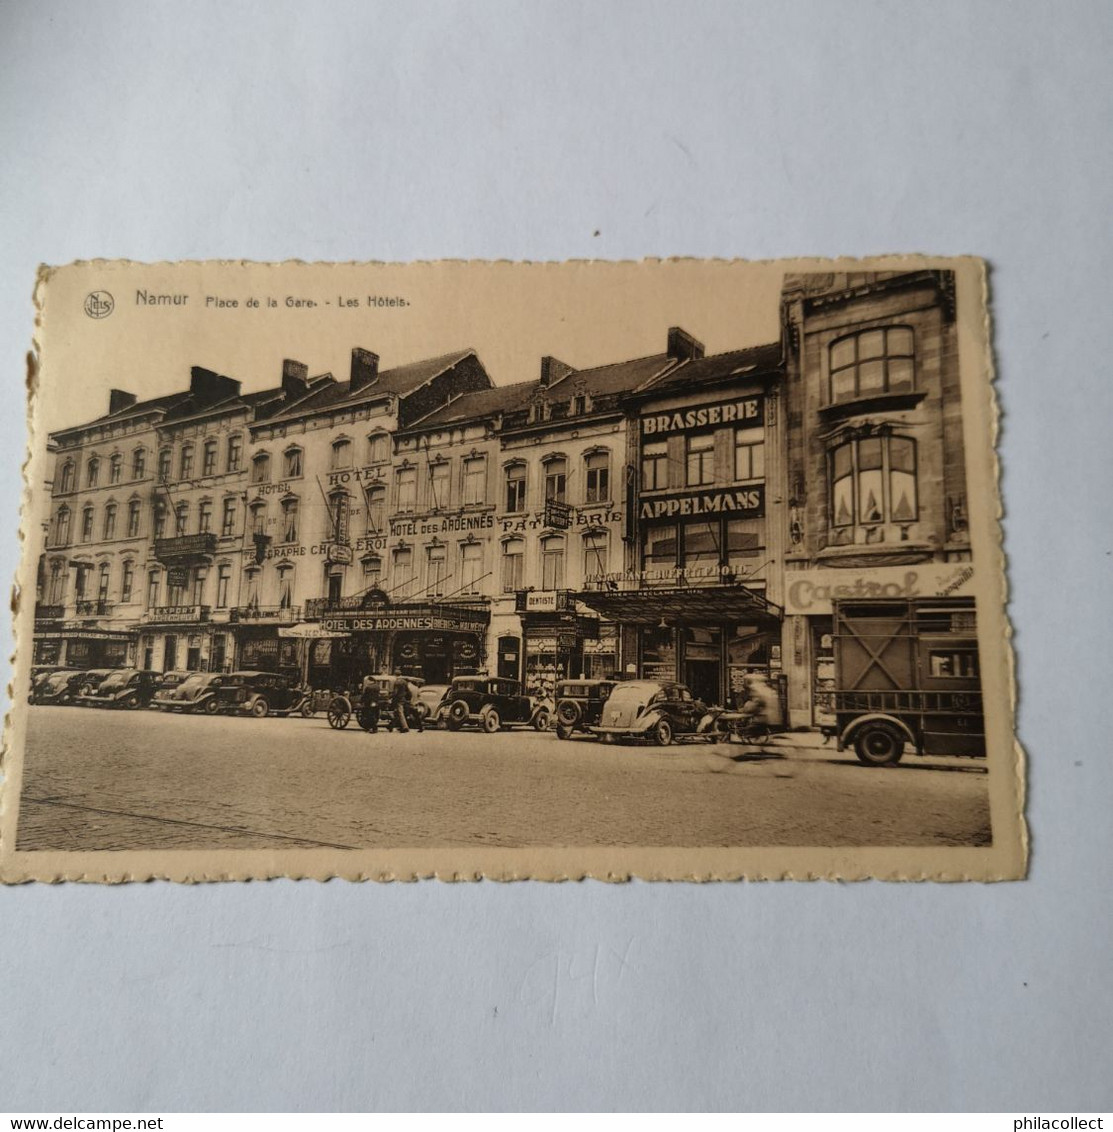 Namur (Ville) Place De La Gare - Les Hotels (automobiles) 19?1 - Namur